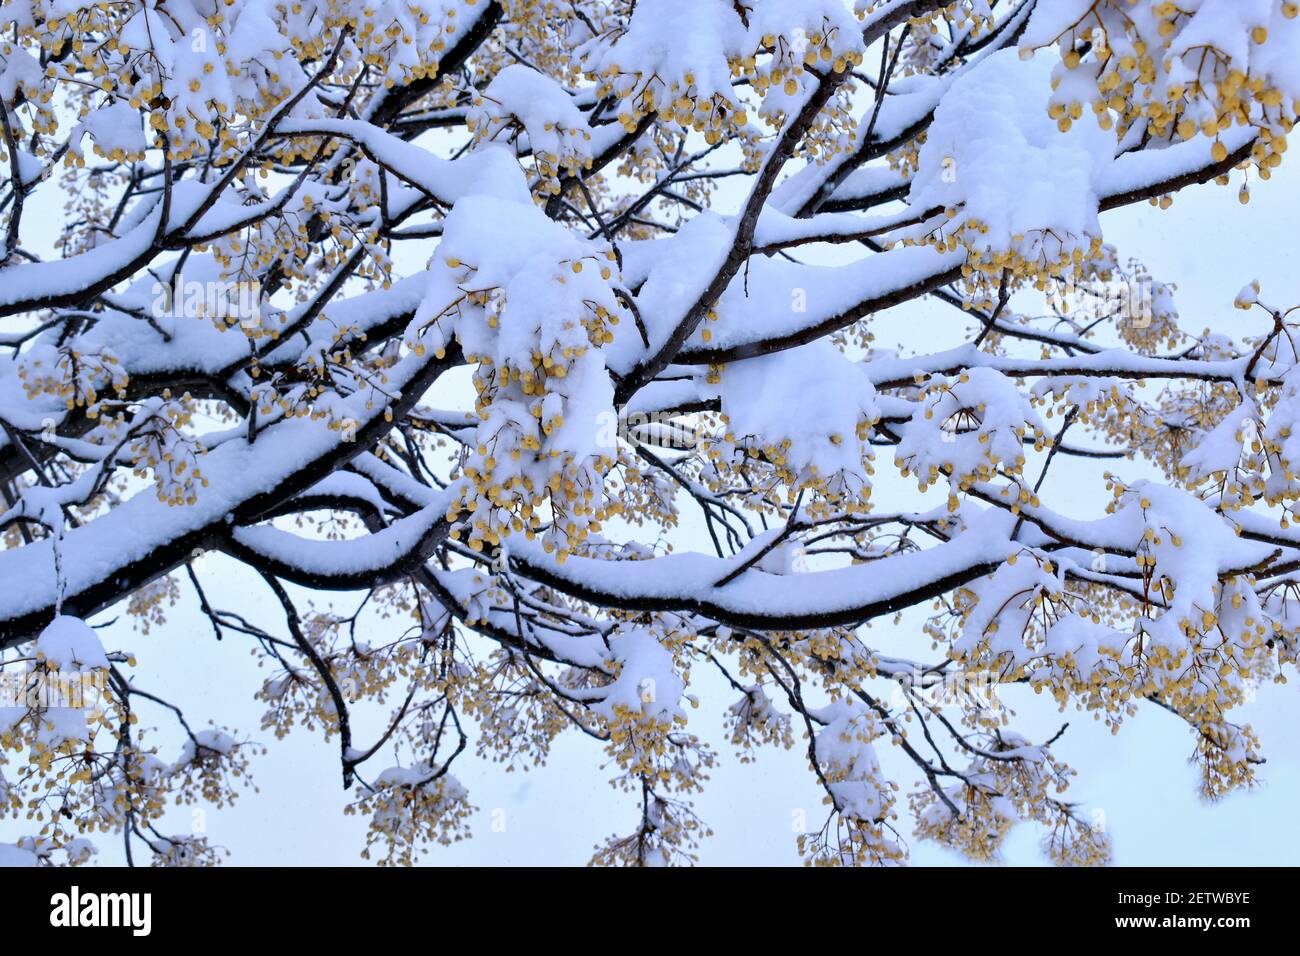 Arbre enneigé. Branches d'arbres couvertes de neige dans la neige inhabituelle et grande de la ville de Madrid, pendant le passage de la tempête de neige Filomena Banque D'Images